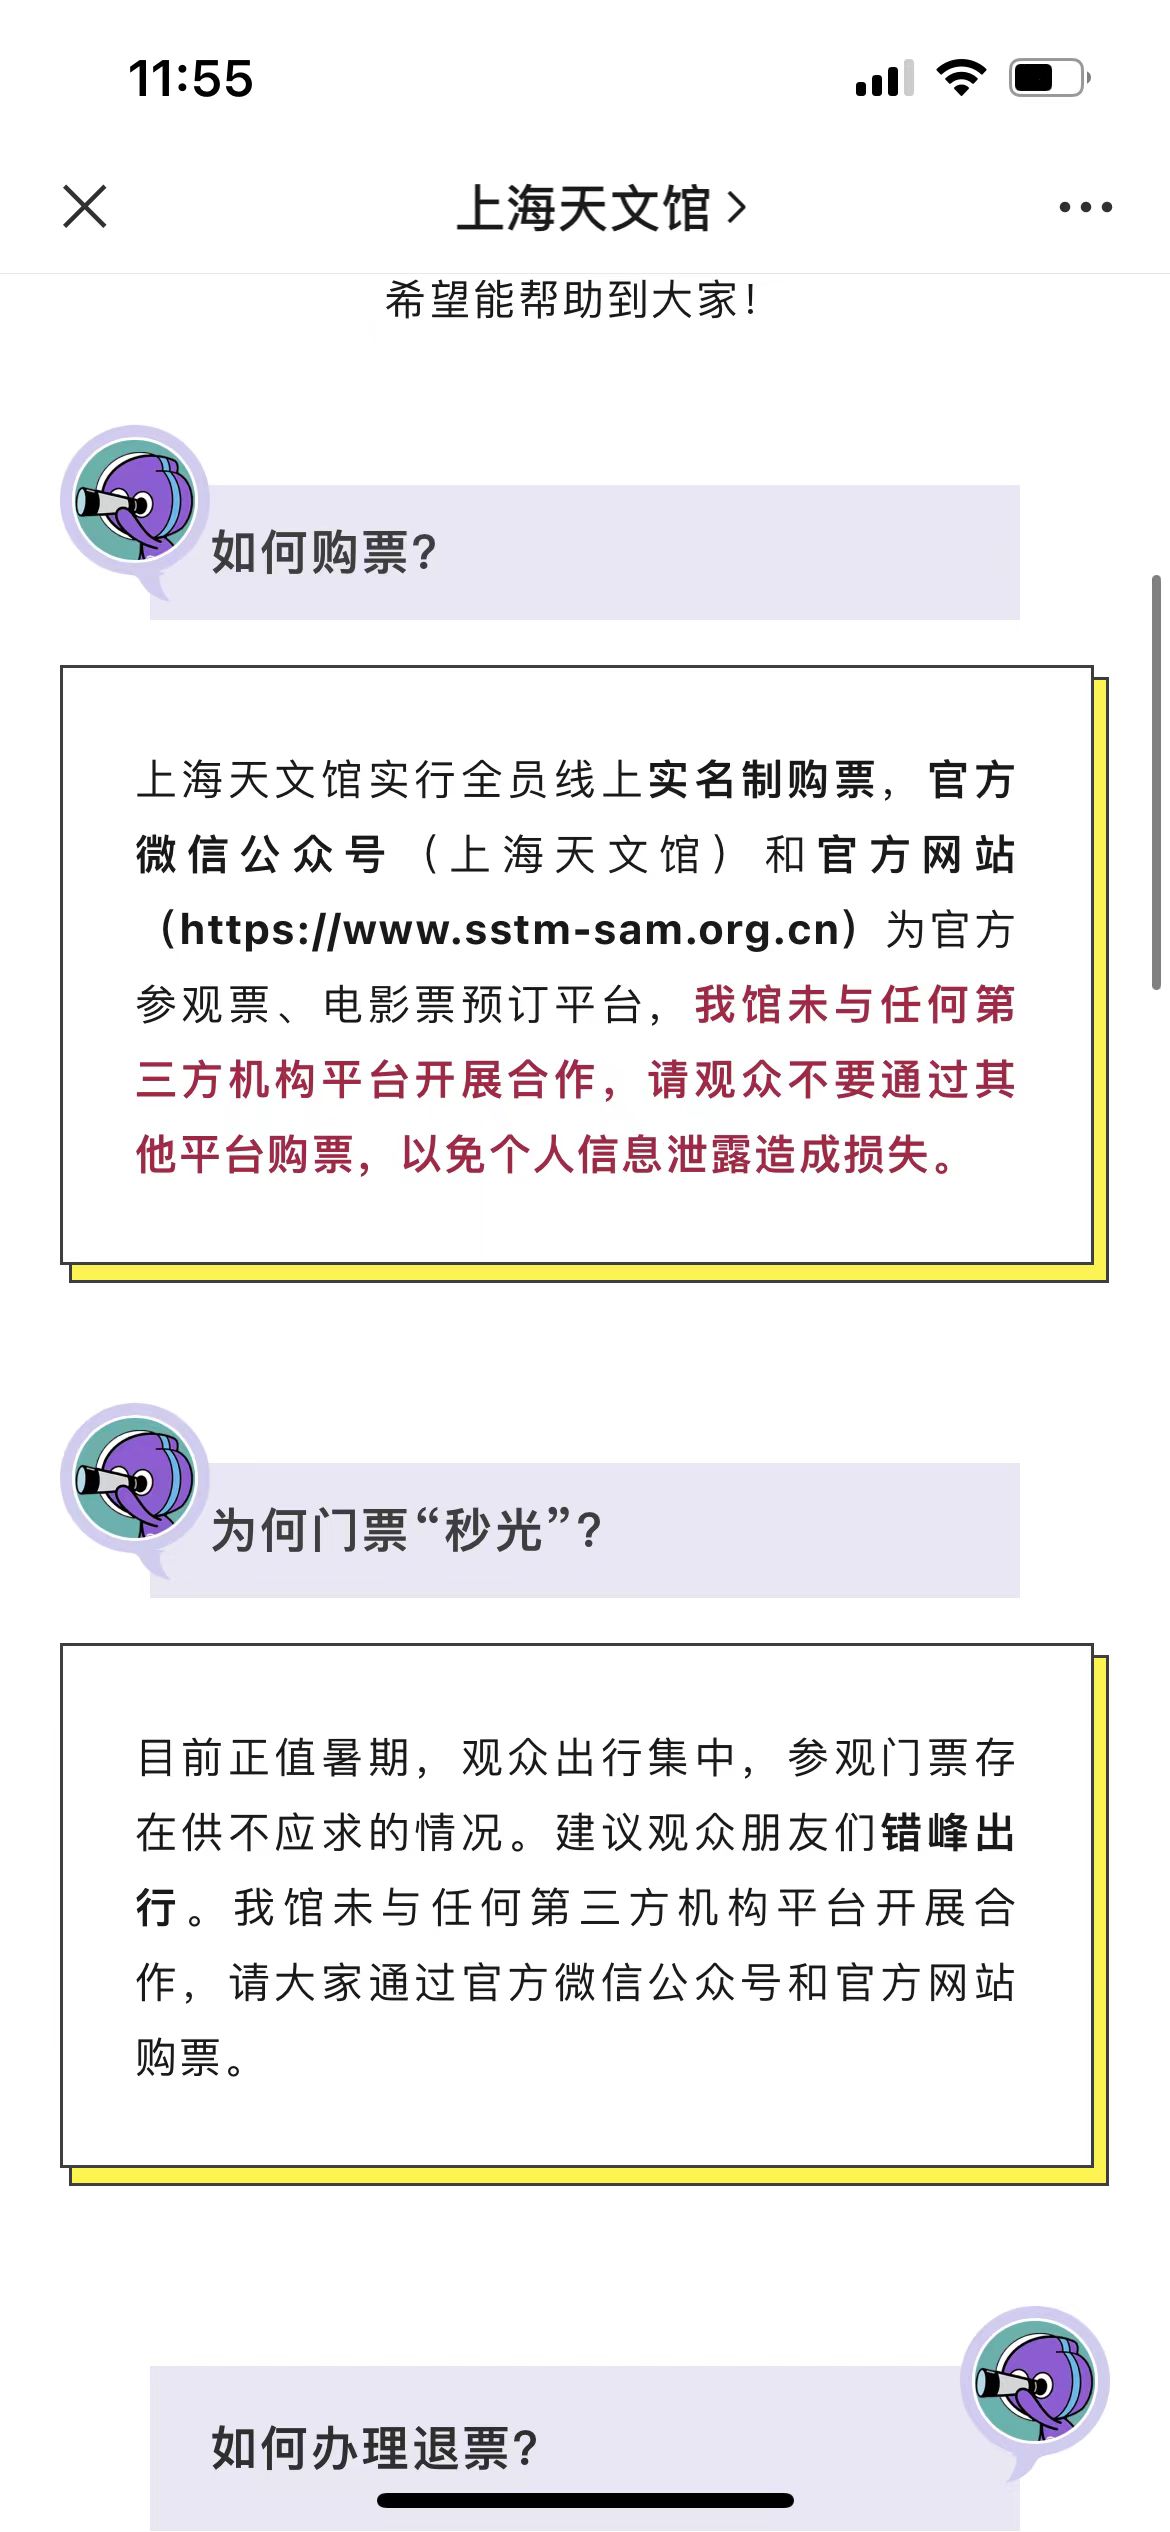 上海天文馆为何研学营能轻松进入？网上仍有人组营兜售声称“不用抢票”